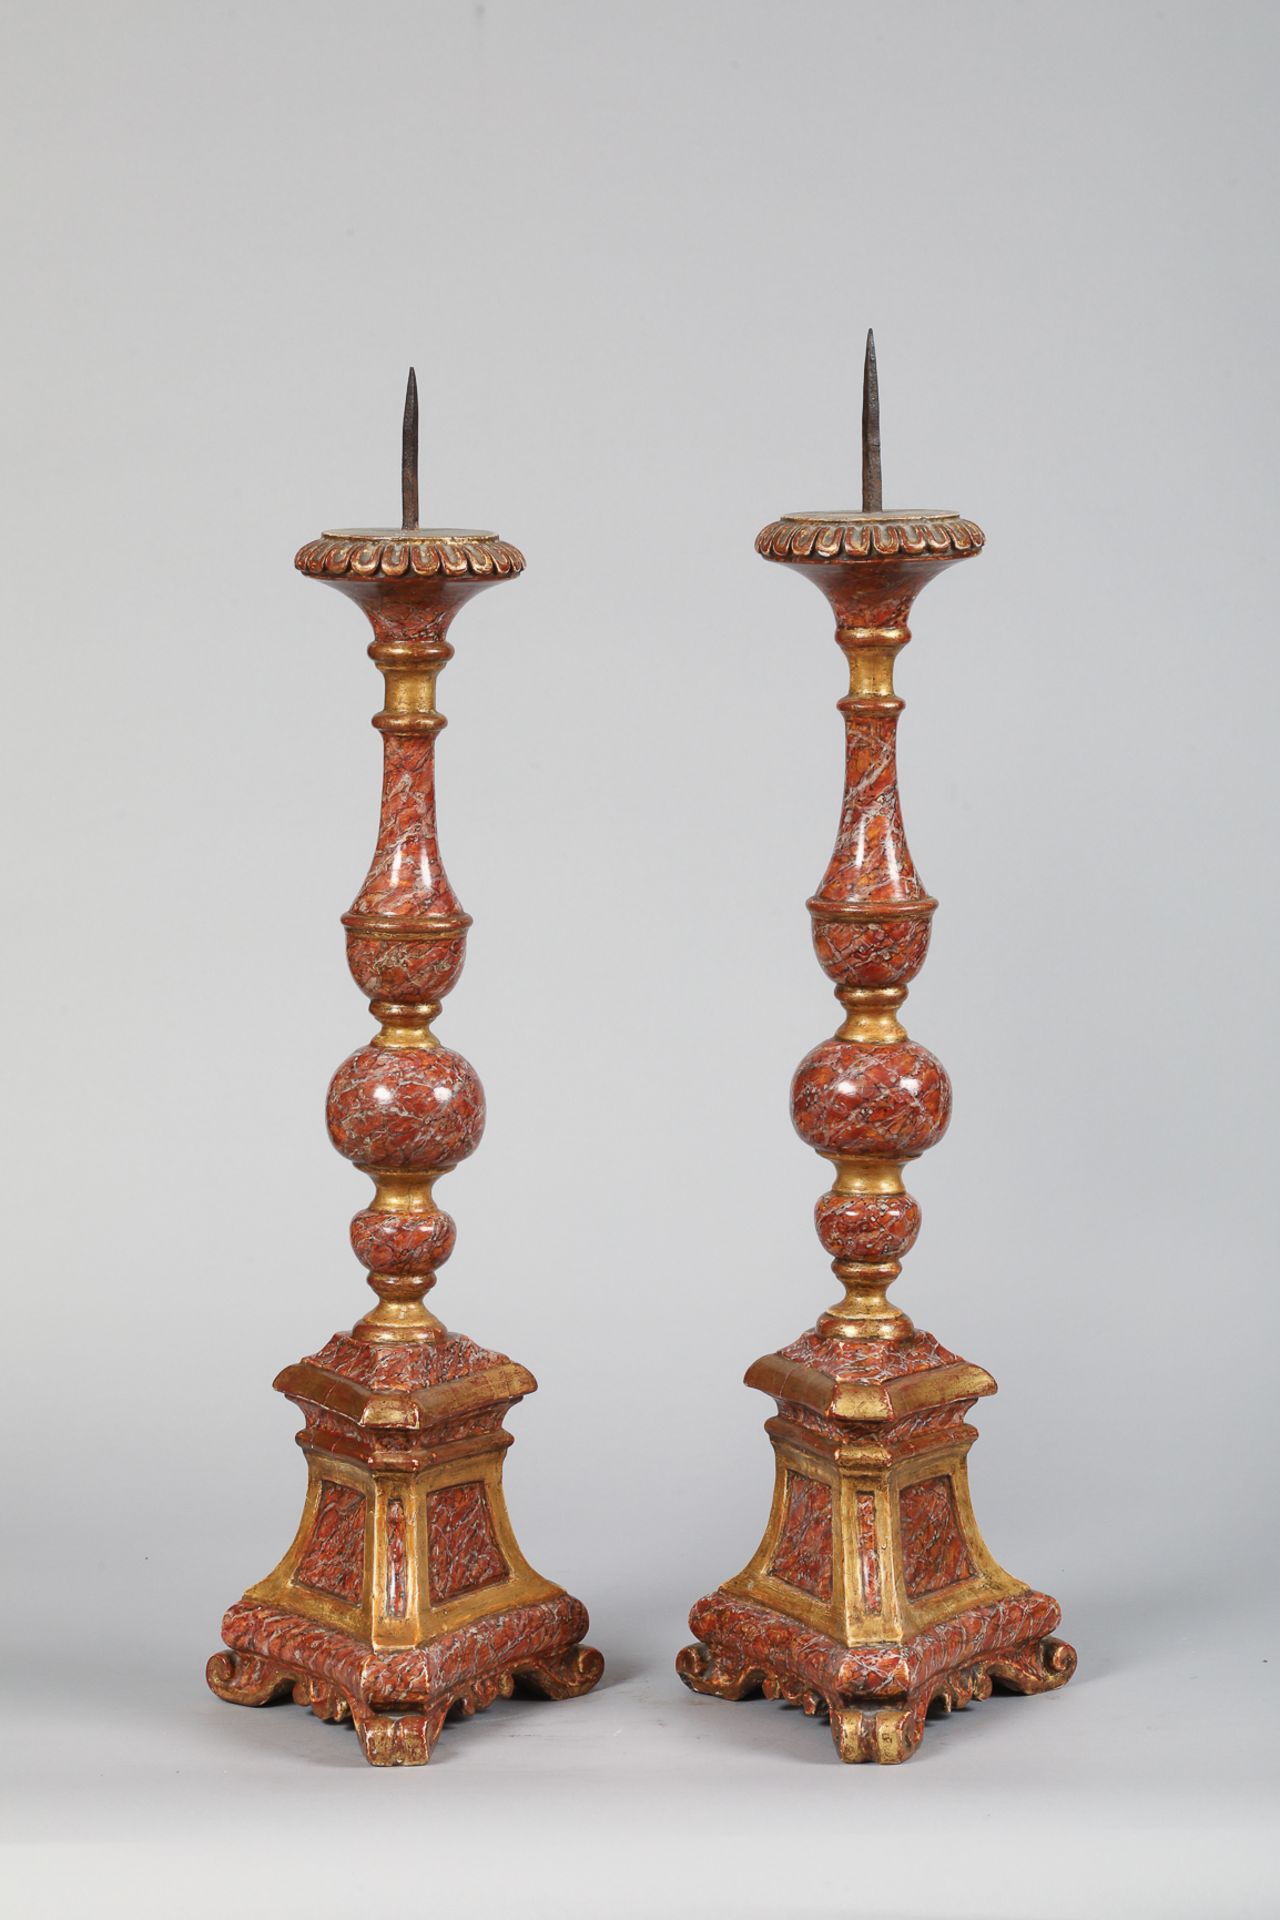 Paire de chandeliers en bois laqué “trompe œil” France 18 eme siècle 65 et 77cm - Bild 2 aus 3